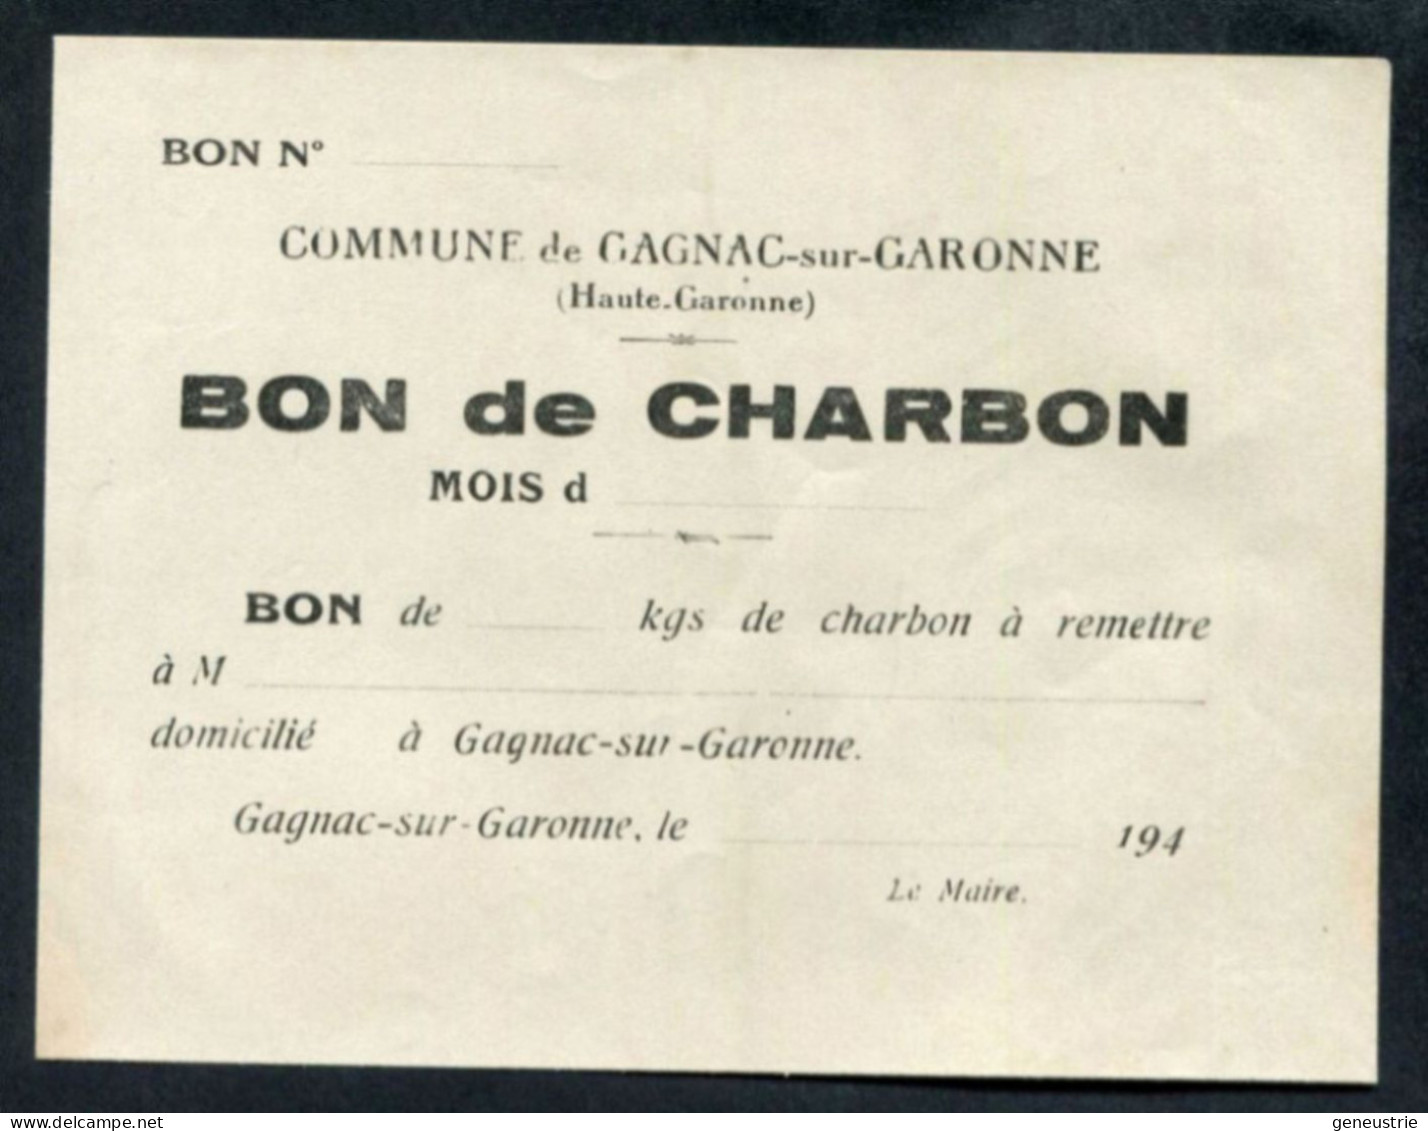 WW2 Billet De Nécessité "Bon De ... Kg De Charbon - Gagnac-sur-Garonne (Toulouse) Années 40" WWII - Buoni & Necessità